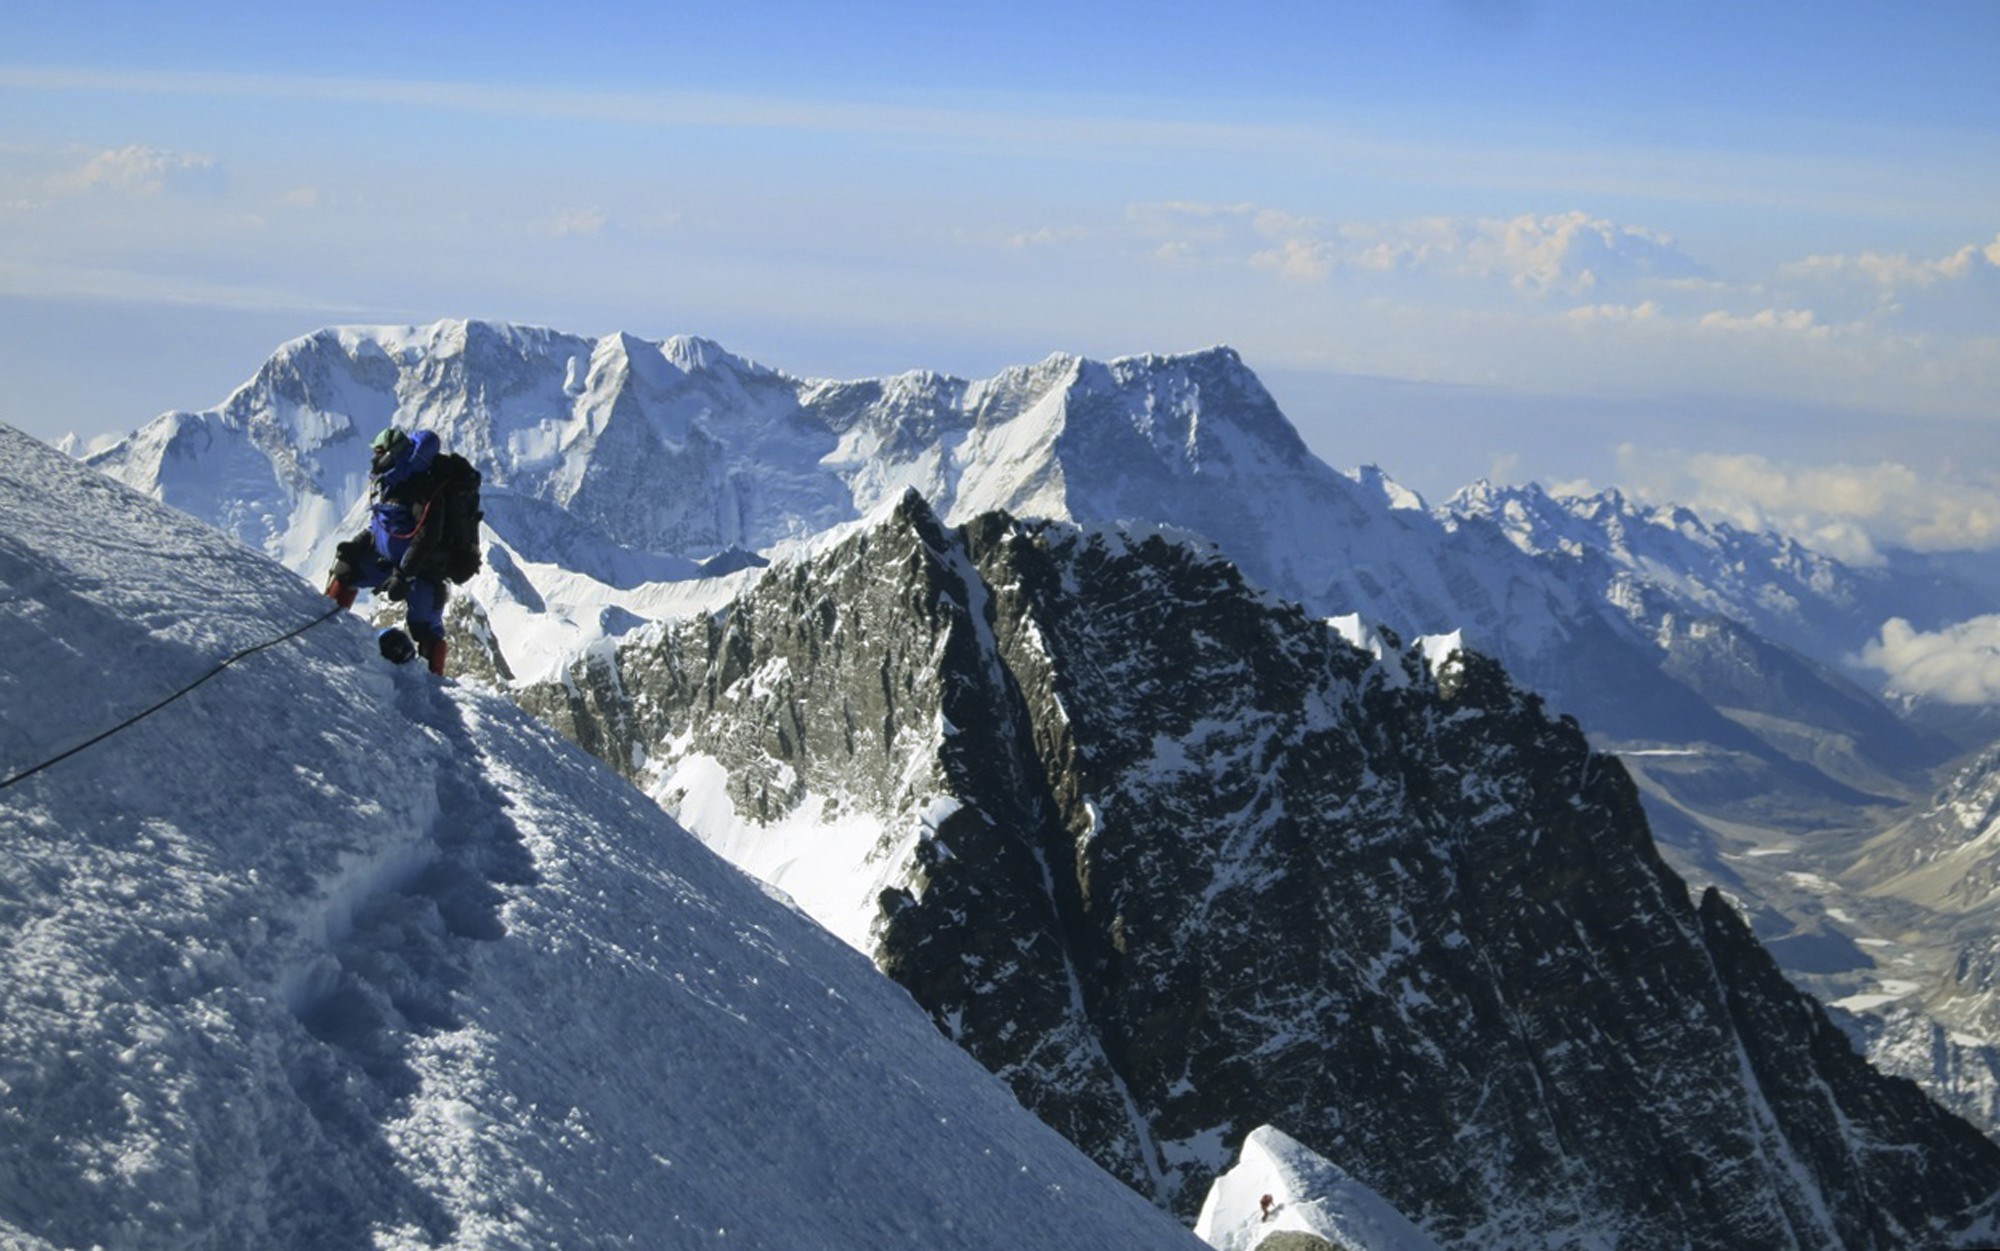 El año que viene cualquier podrá escalar el Everest…al menos virtualmente